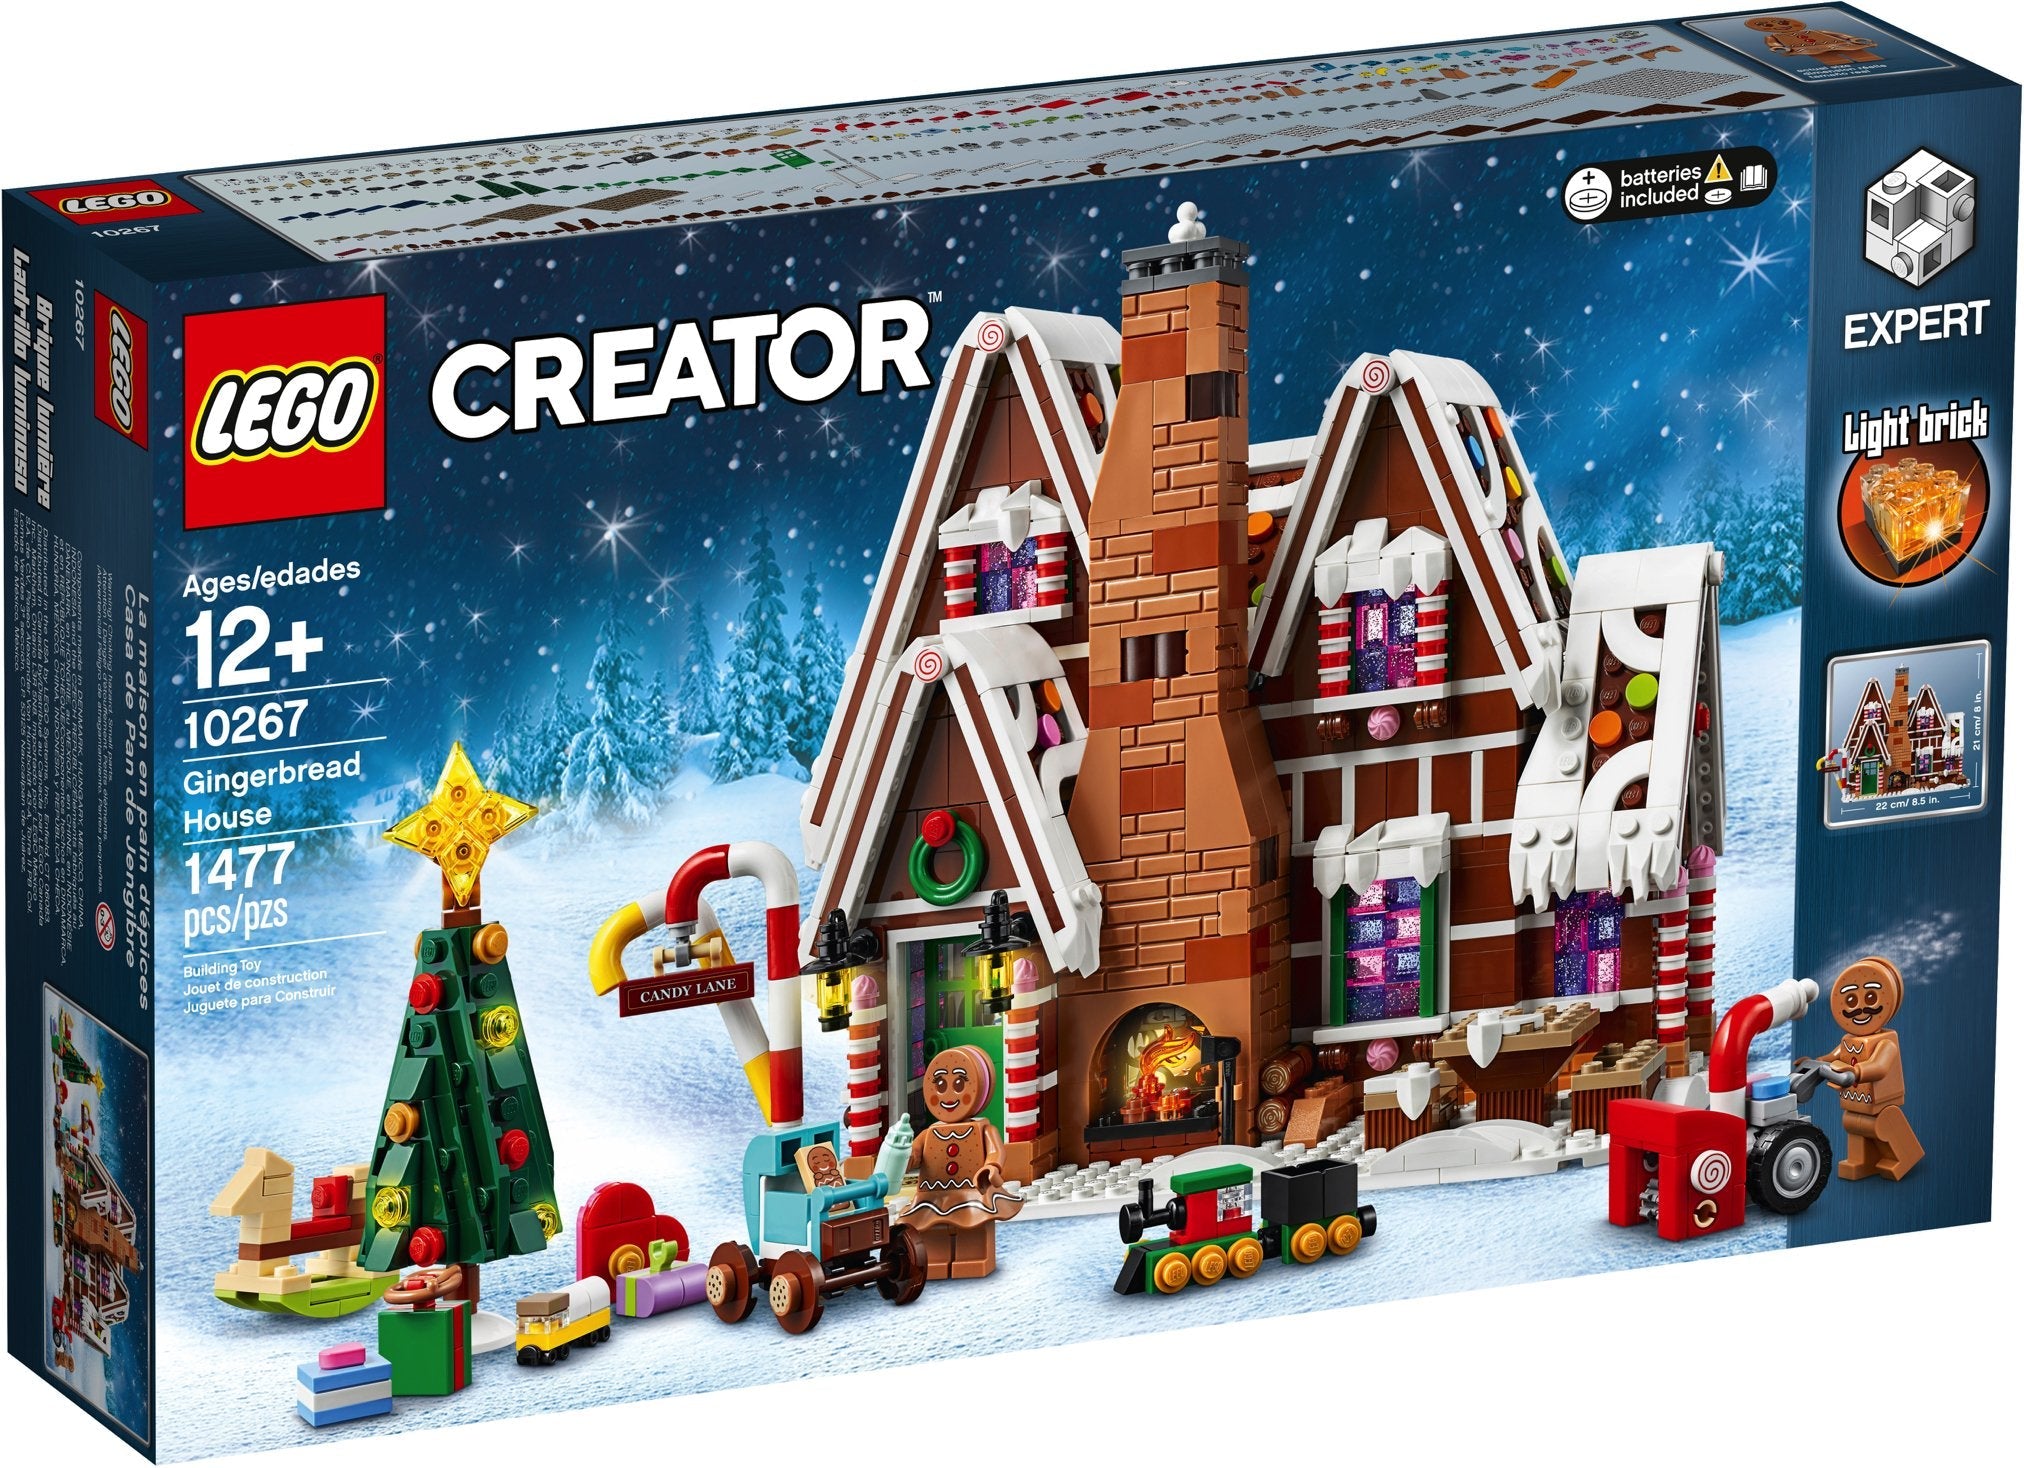 LEGO Creator Expert Gingerbread House (10267) - im GOLDSTIEN.SHOP verfügbar mit Gratisversand ab Schweizer Lager! (5702016368284)